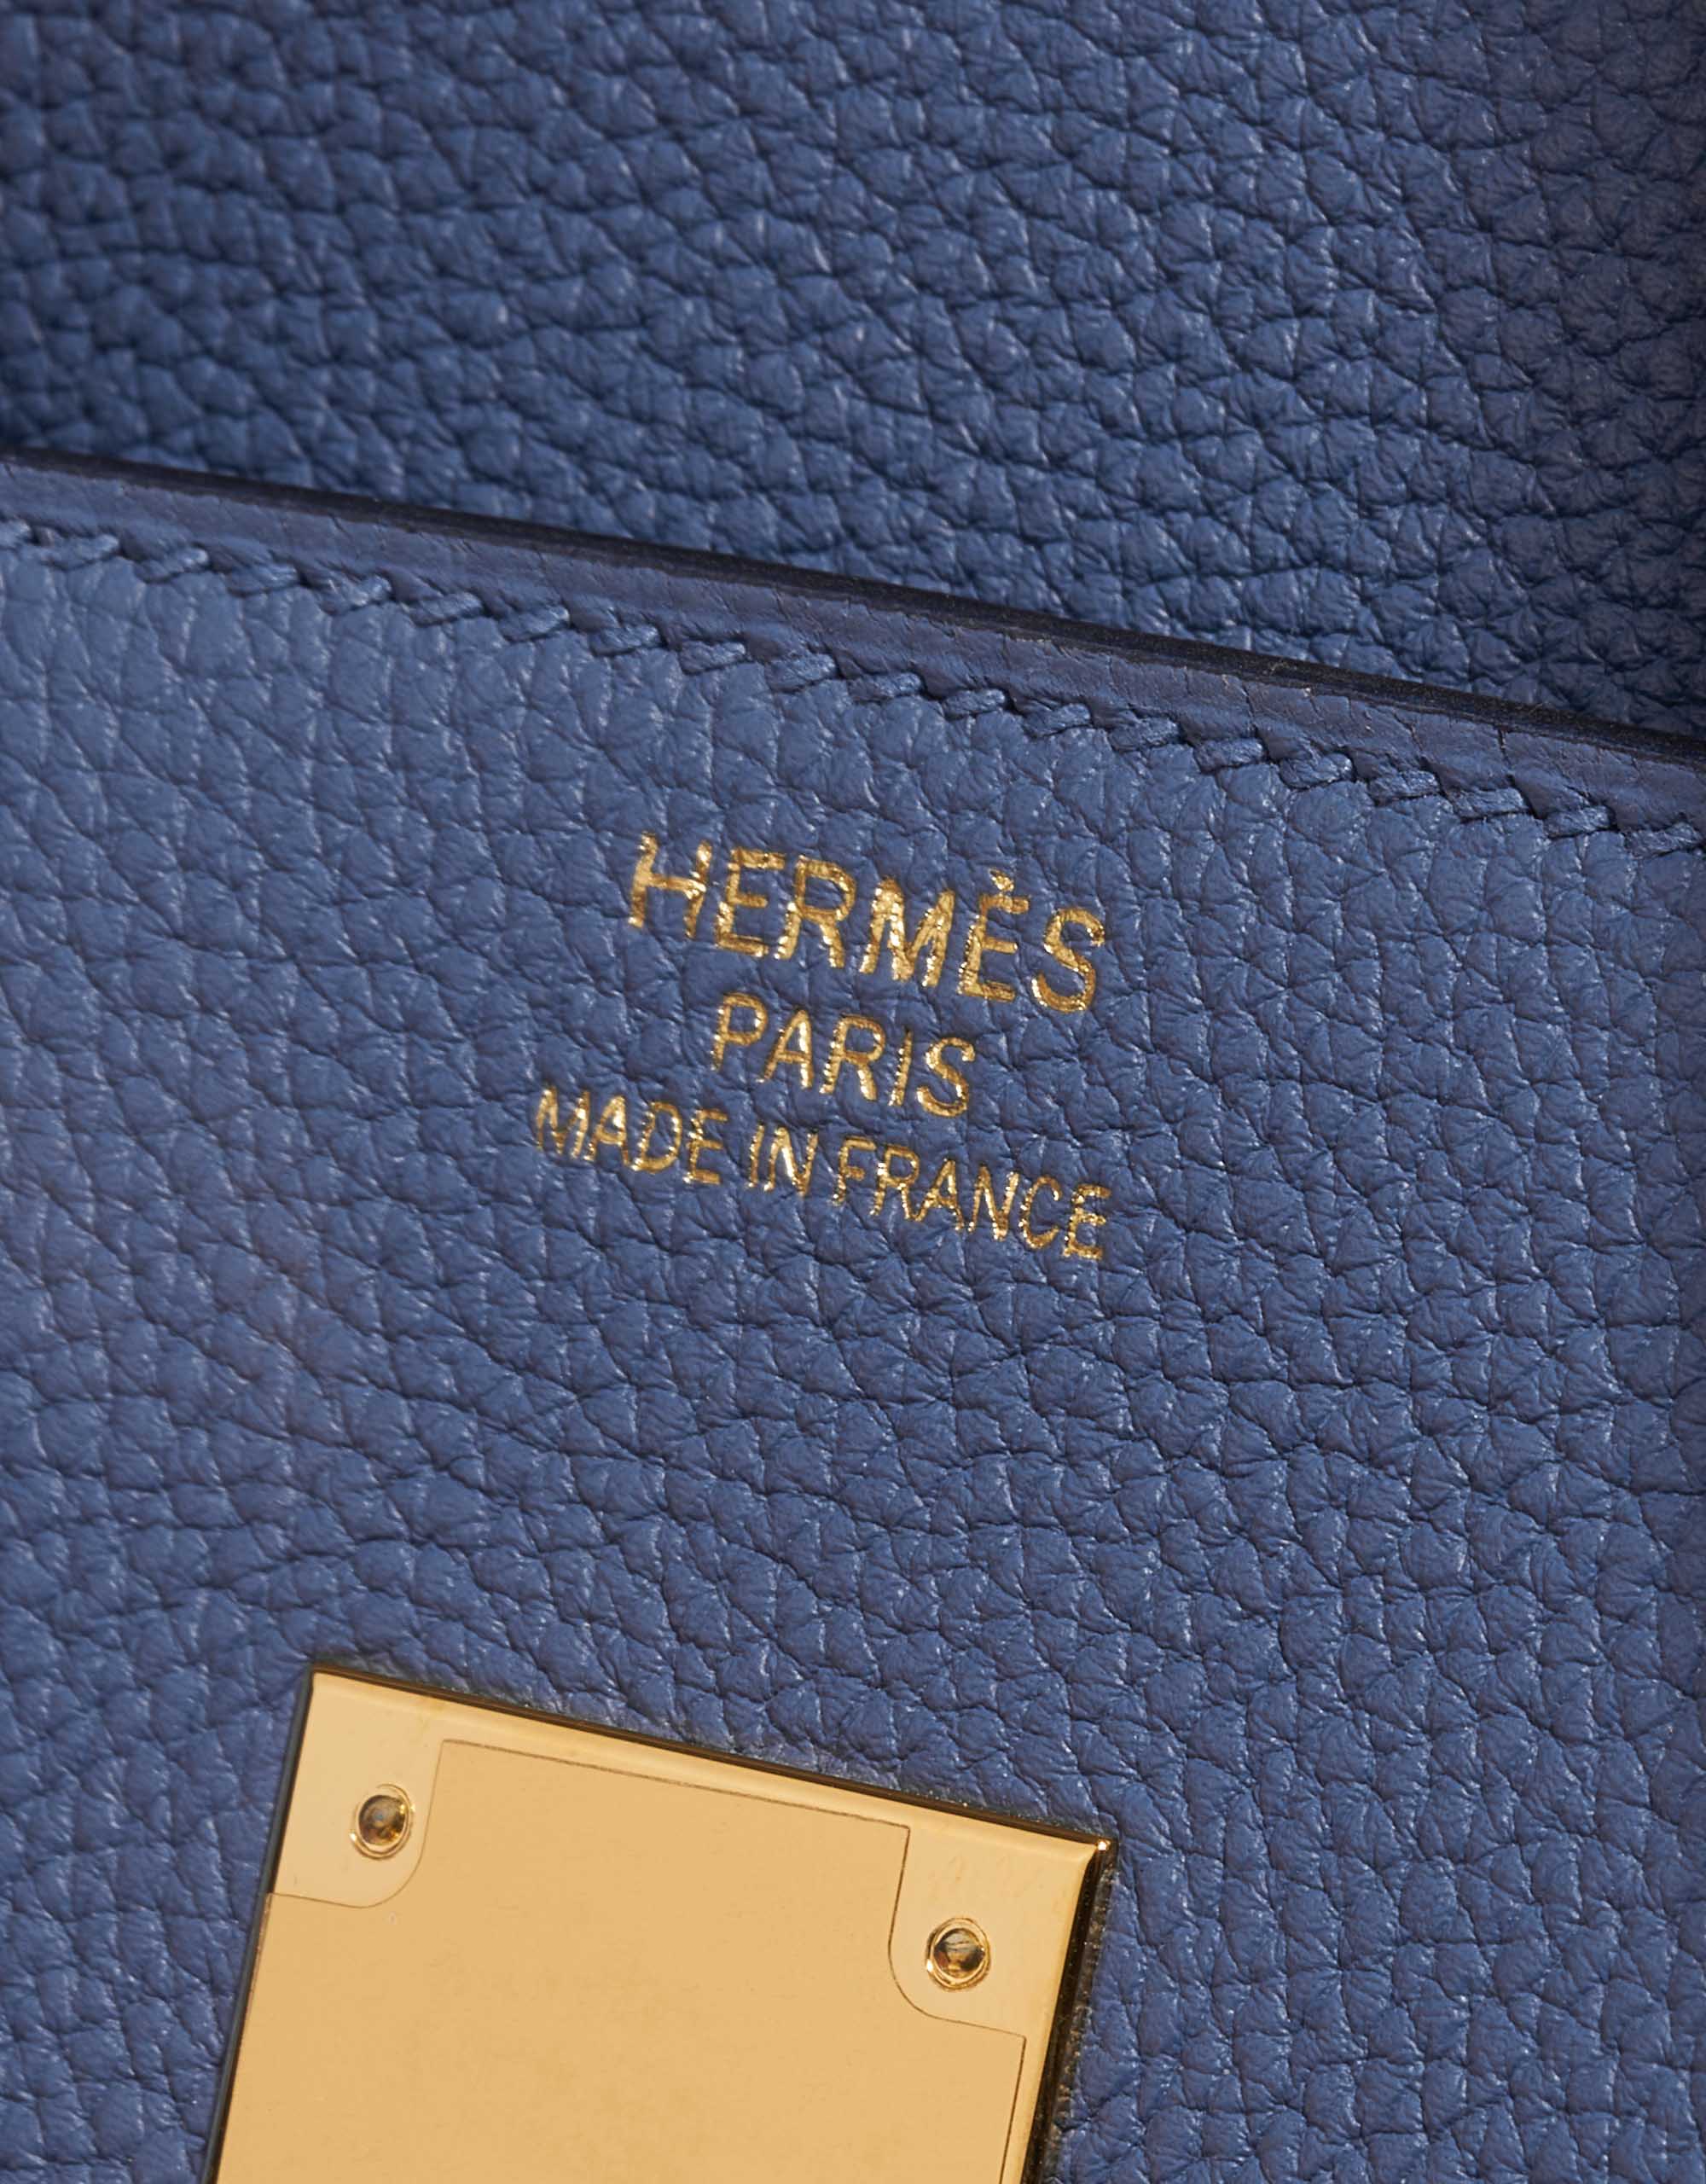 Hermes Birkin Bag Togo Leather Gold Hardware In Navy Blue